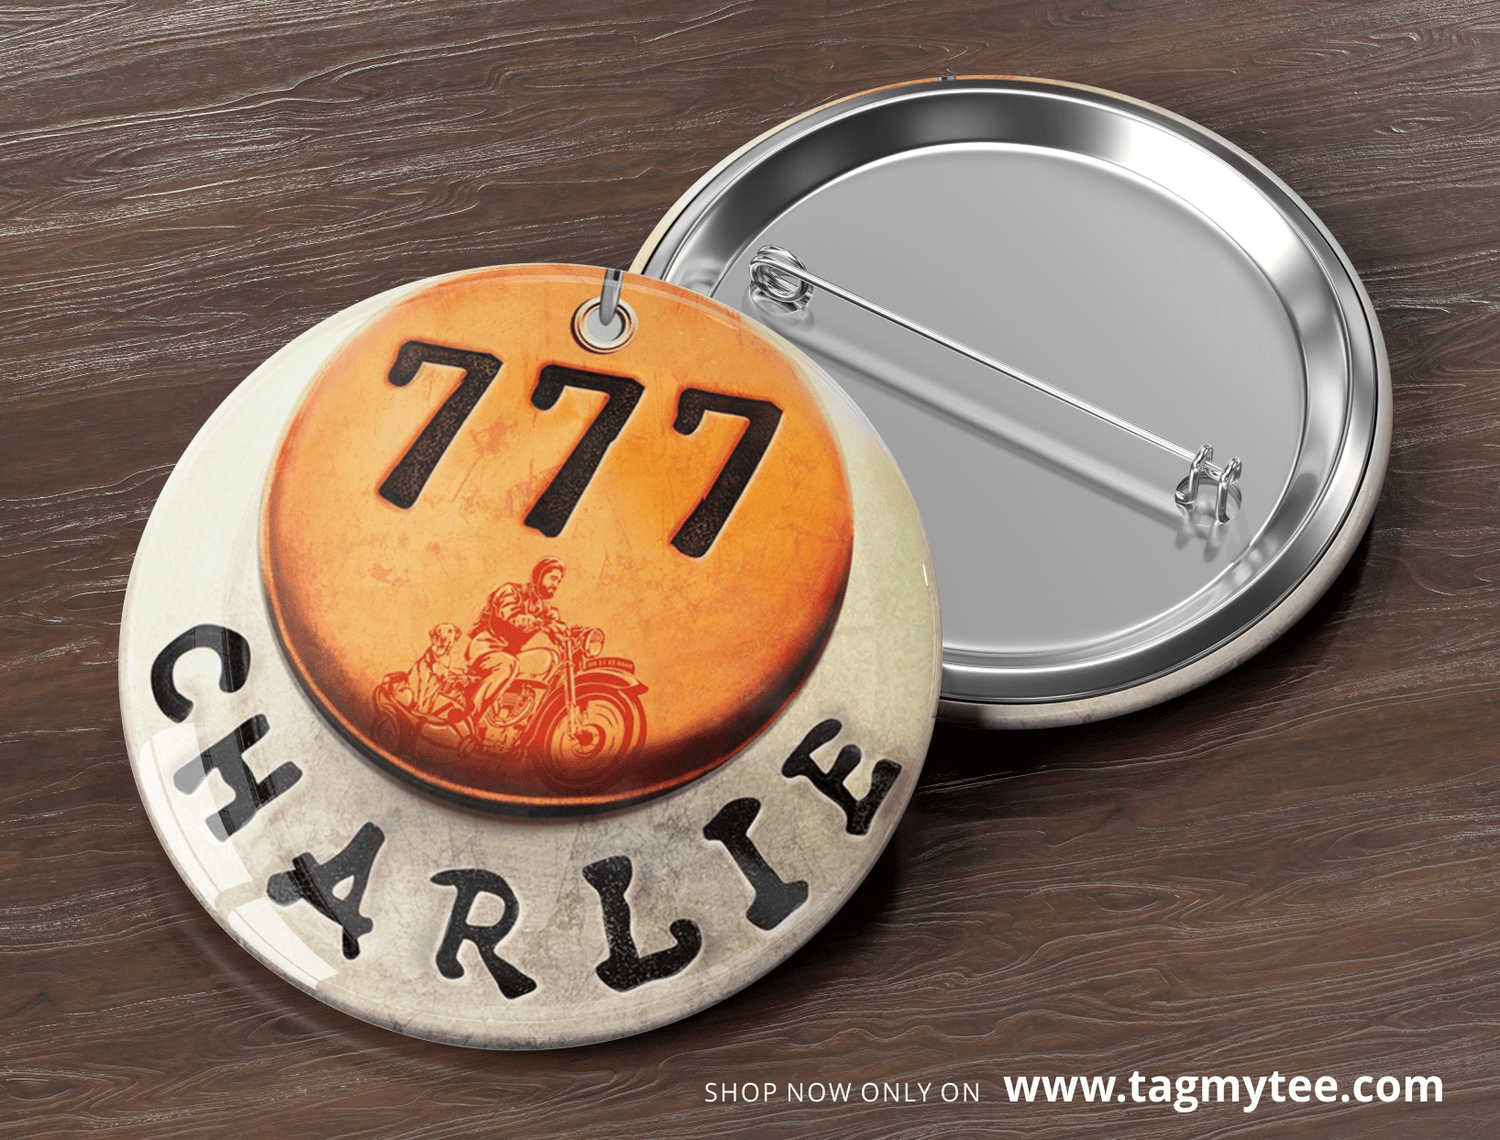 777 Charlie Badges - Pack of 4 - TagMyTee - Badges